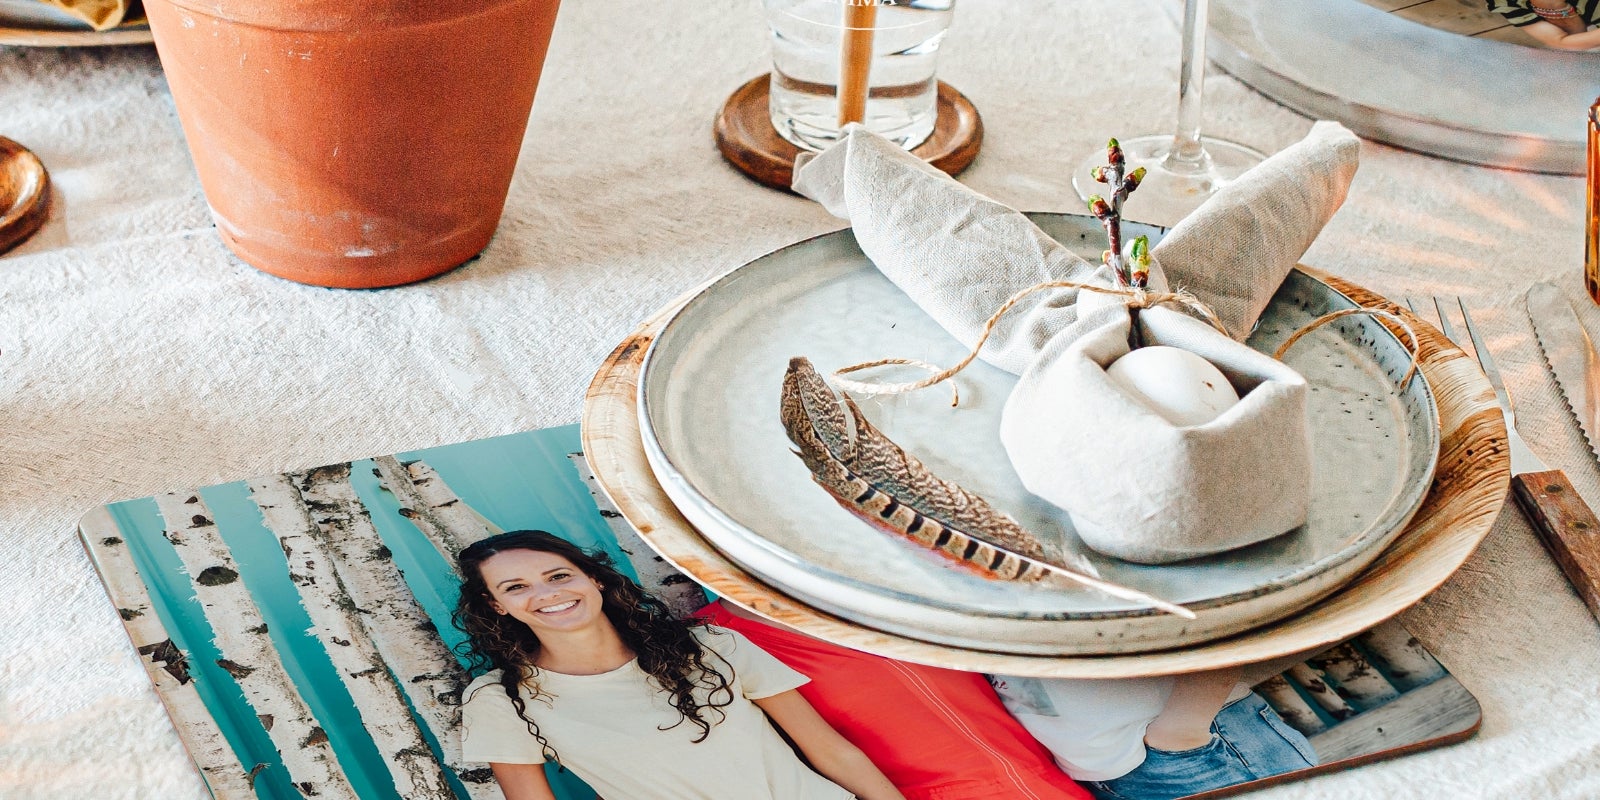 65 ideas para decorar las mesas de tu boda y sorprender a todos